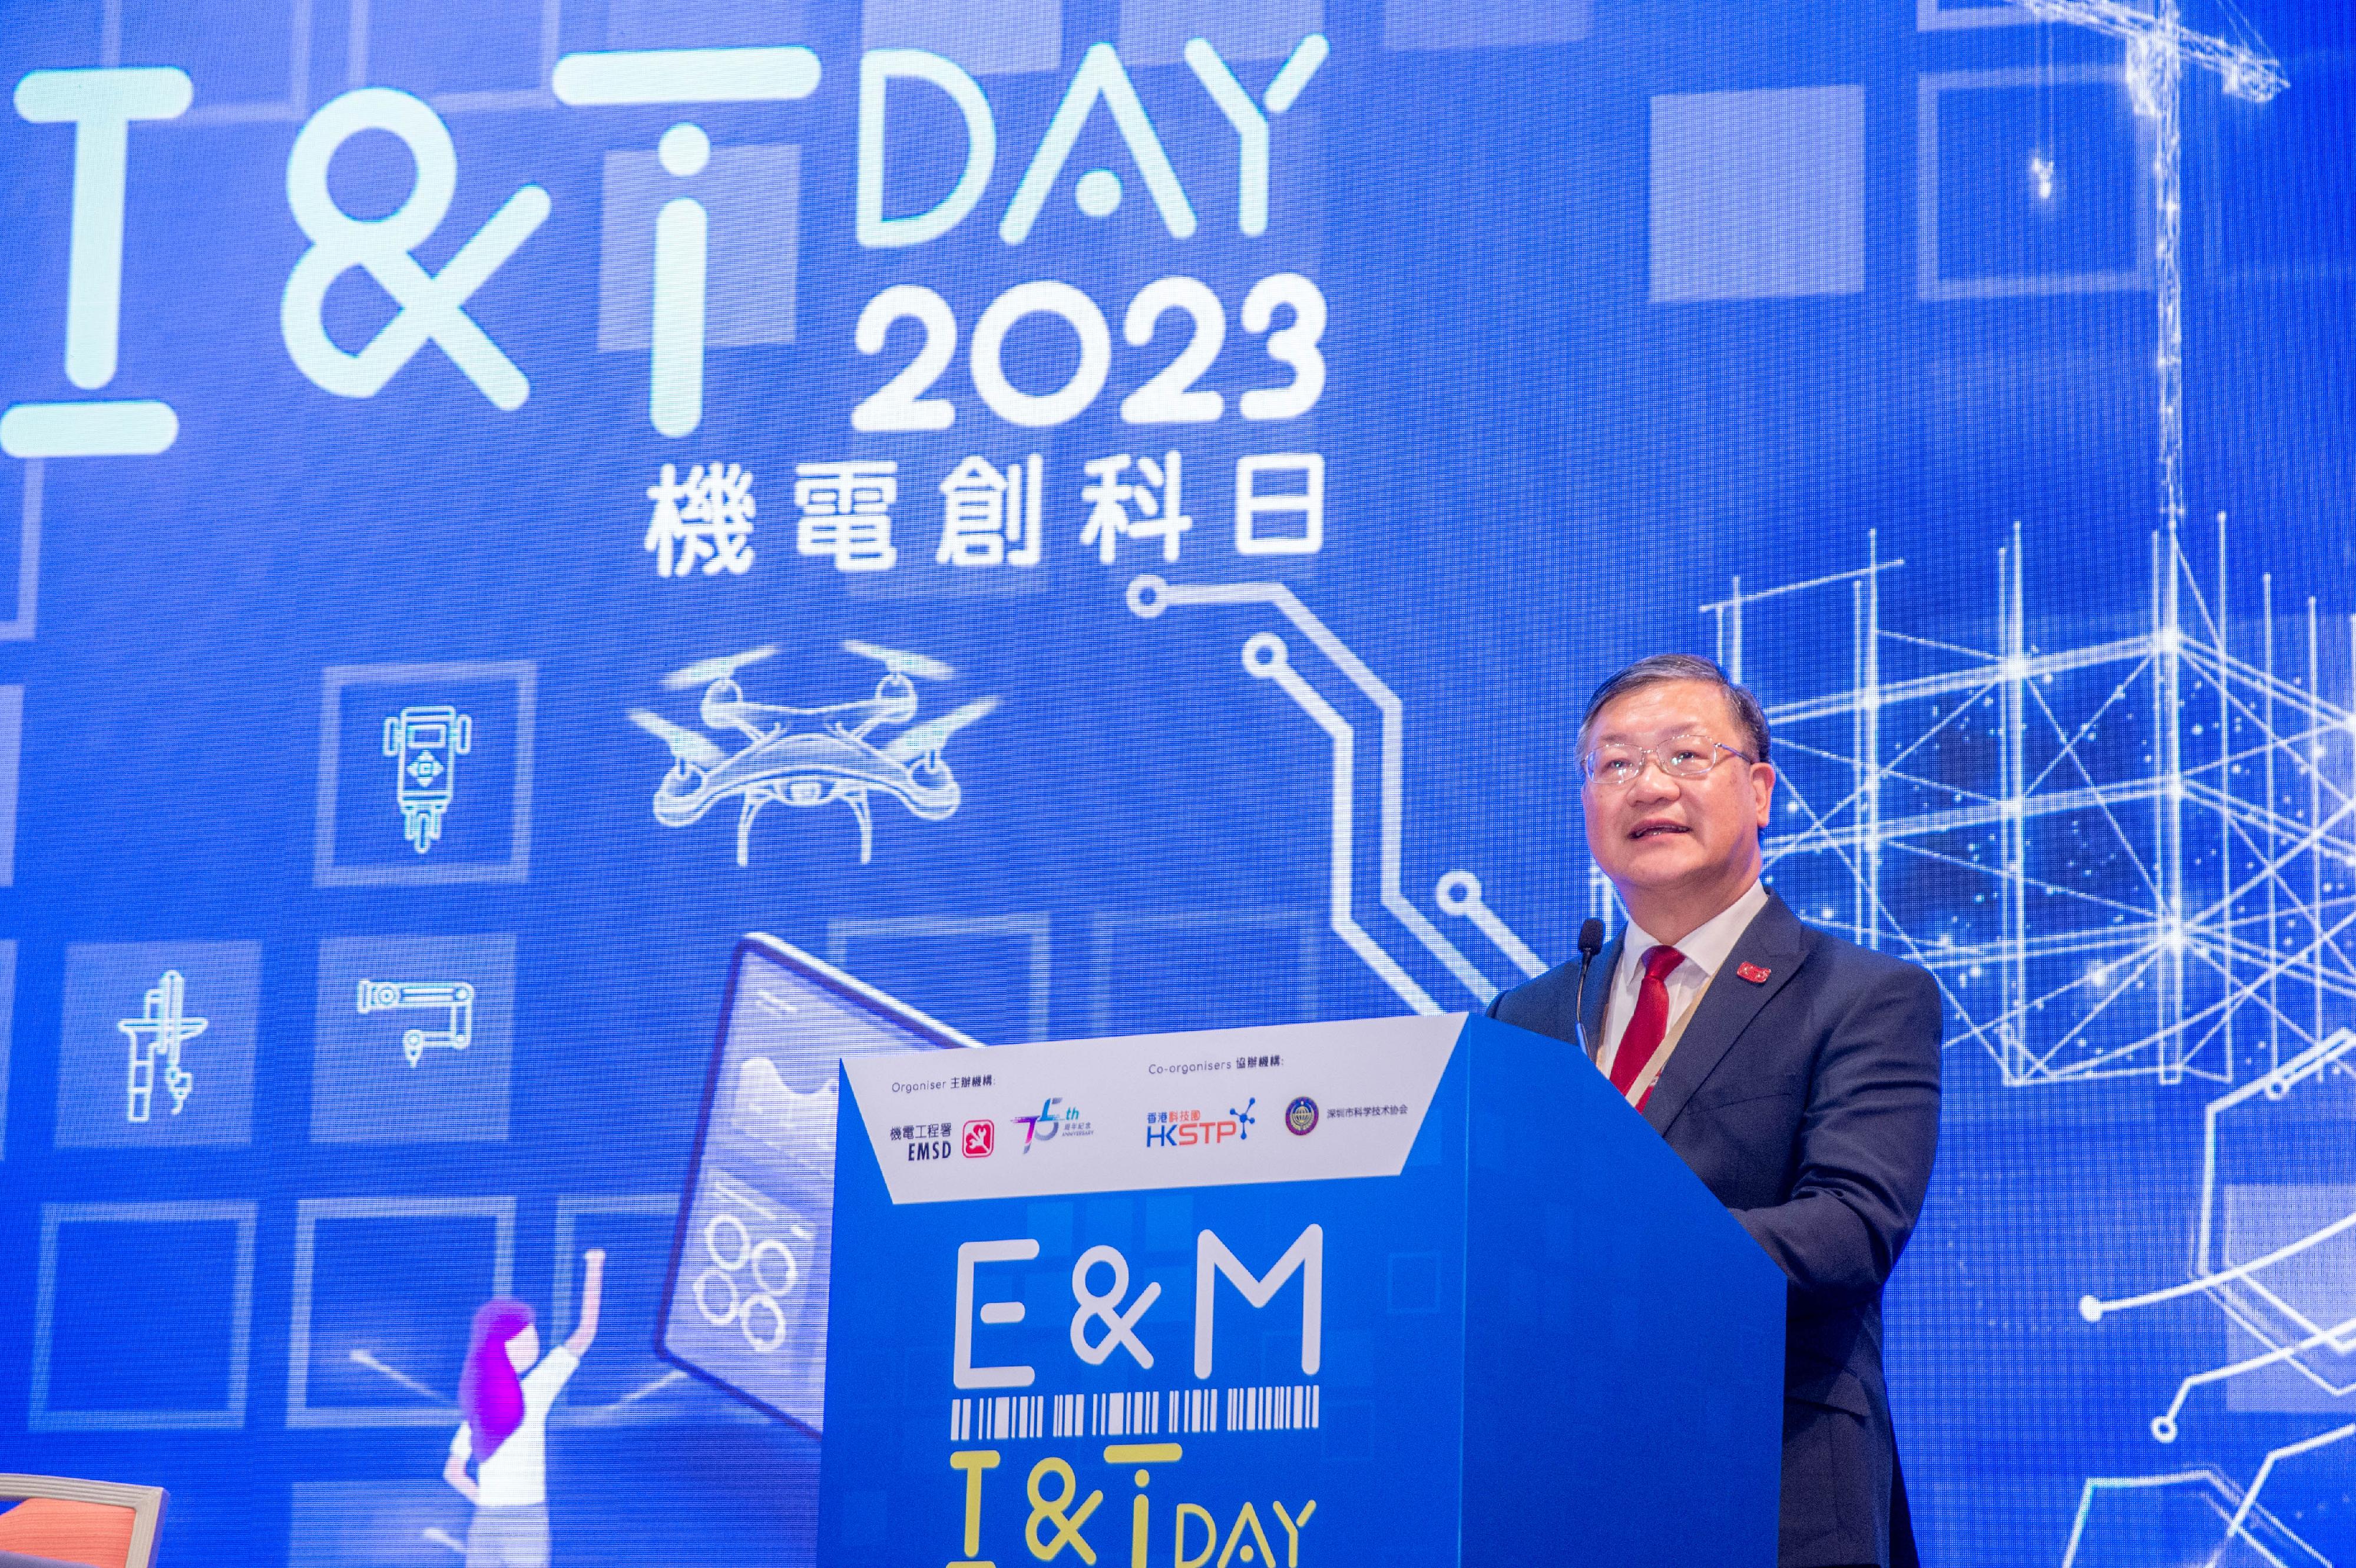 由机电工程署（机电署）主办，香港科技园公司和深圳市科学技术协会协办的「机电创科日2023」今日（七月三十一日）开幕。图示机电署署长彭耀雄在活动上致辞。